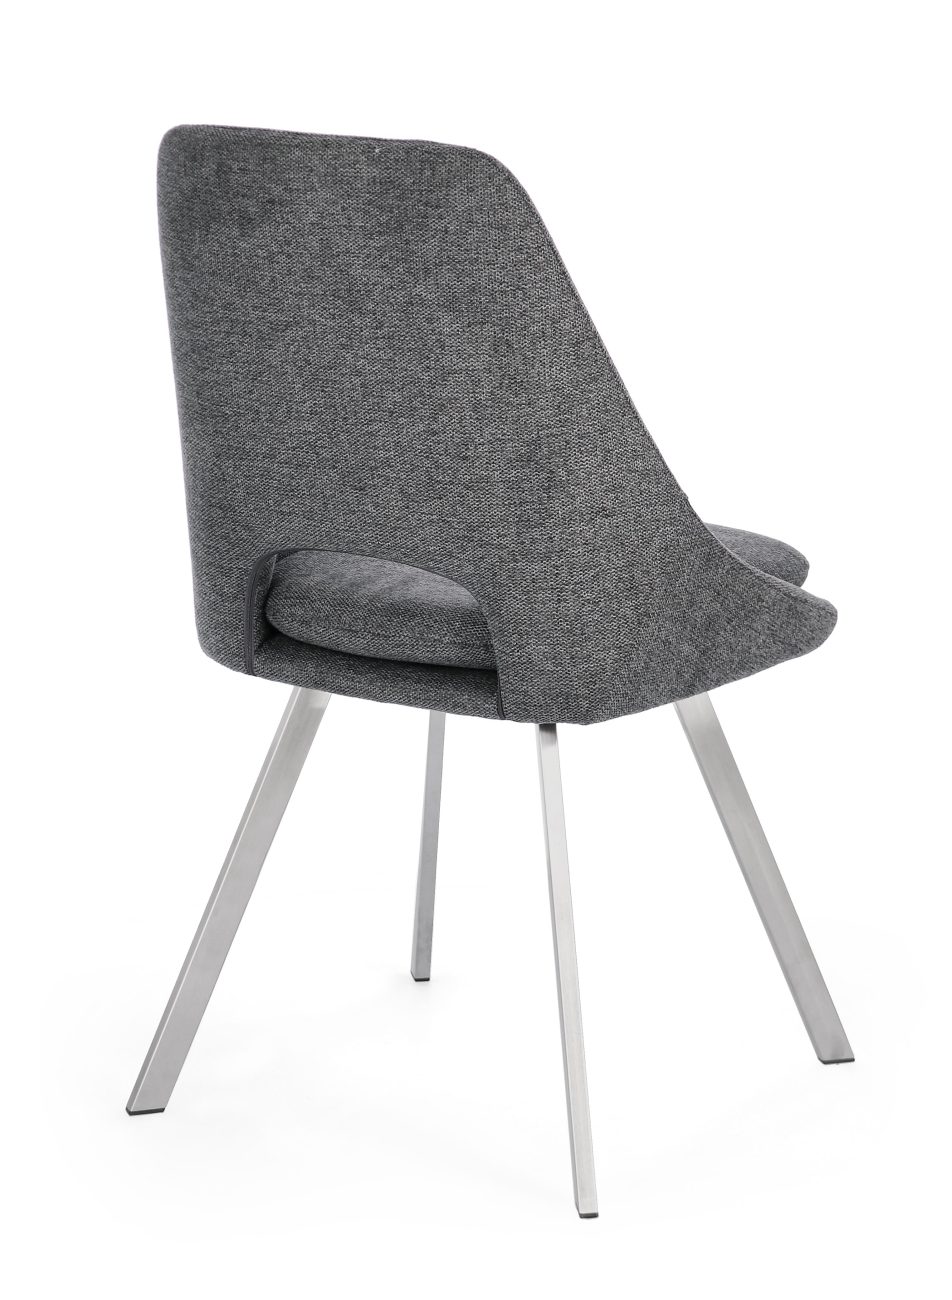 Der Esszimmerstuhl Kashar überzeugt mit seinem modernen Stil. Gefertigt wurde er aus Stoff, welcher einen dunkelgrauen Farbton besitzt. Das Gestell ist aus Edelstahl und hat eine silberne Farbe. Der Stuhl besitzt eine Sitzhöhe von 49 cm.